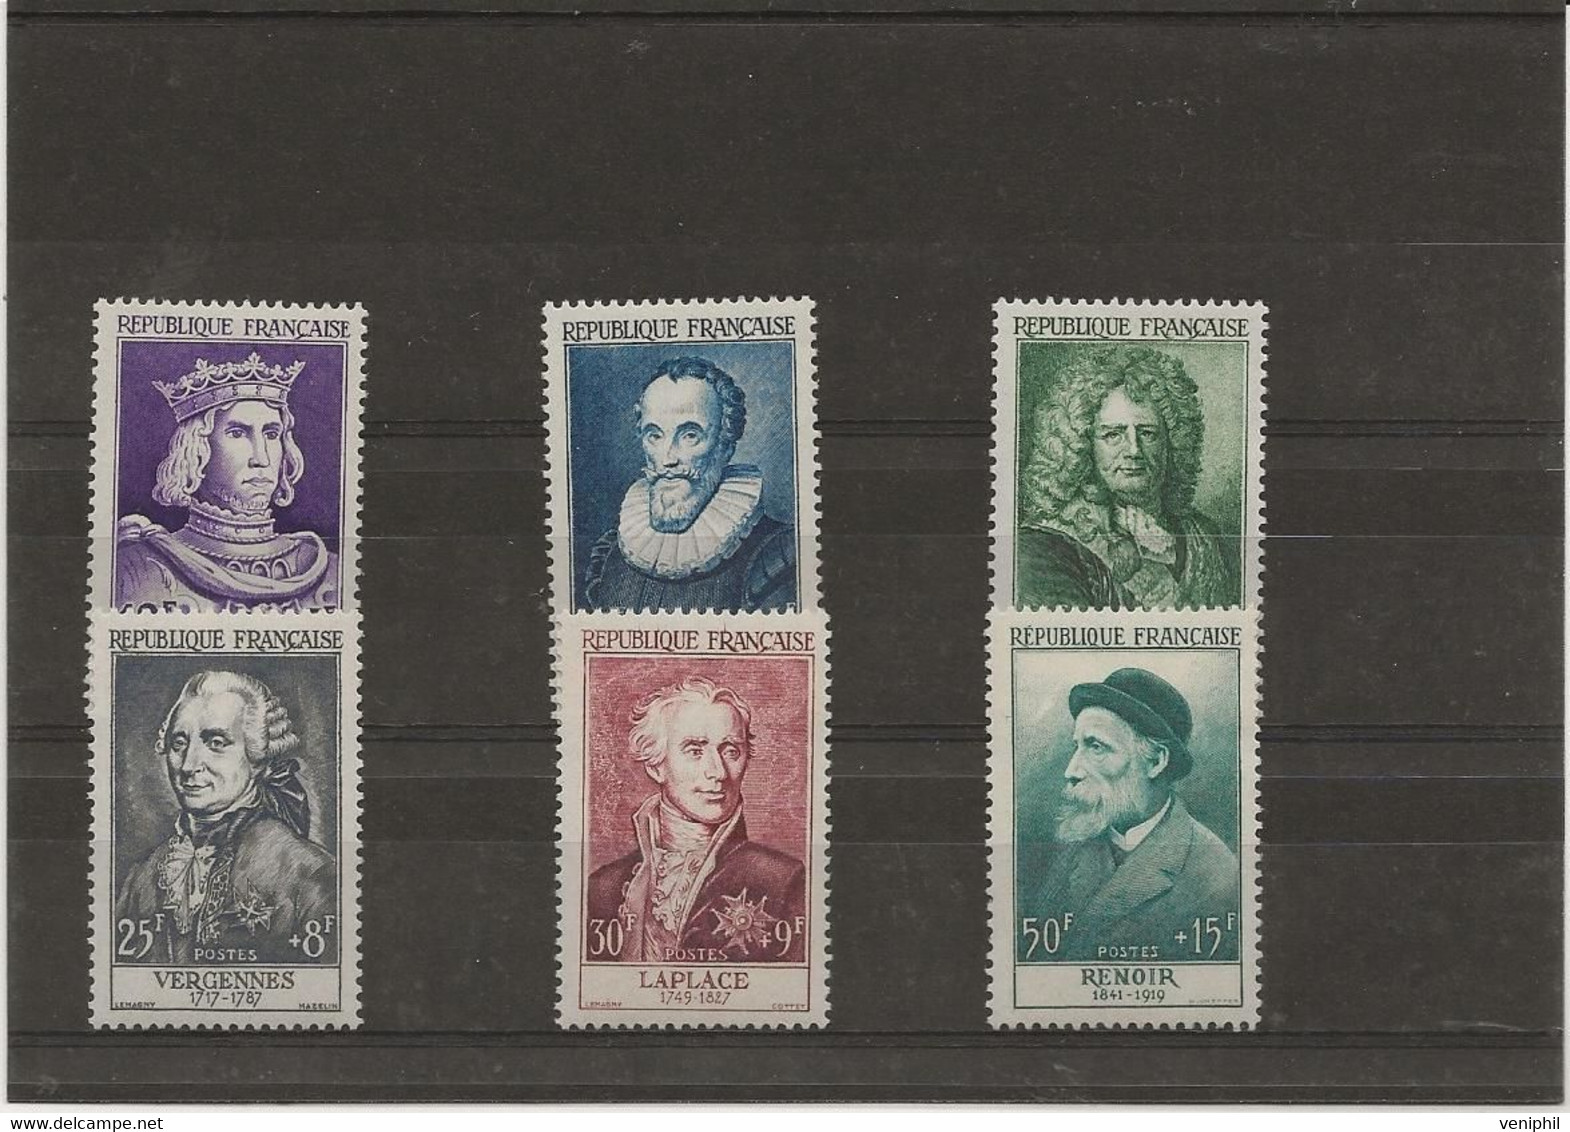 SERIE RENOIR - N° 1027 A 1032 -NEUF SANS CHARNIERE - ANNEE 1955 - COTE : 160 € - Unused Stamps